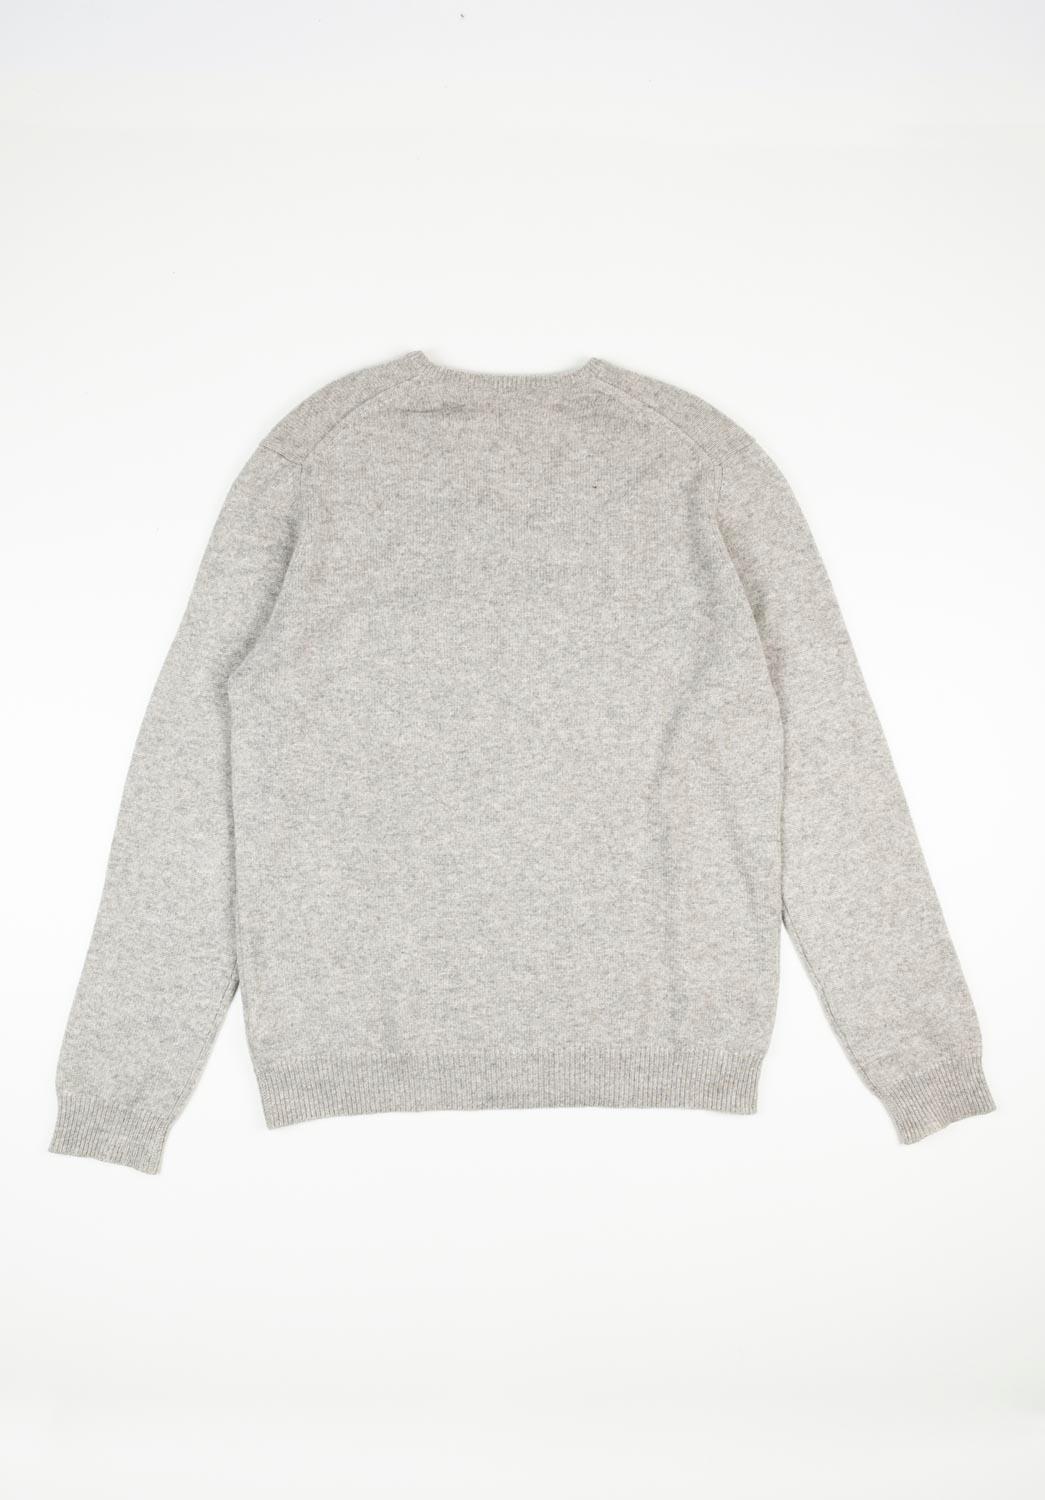 Prada Men Sweater Cashmere V Neck Size ITA52 (L), S687 For Sale 1